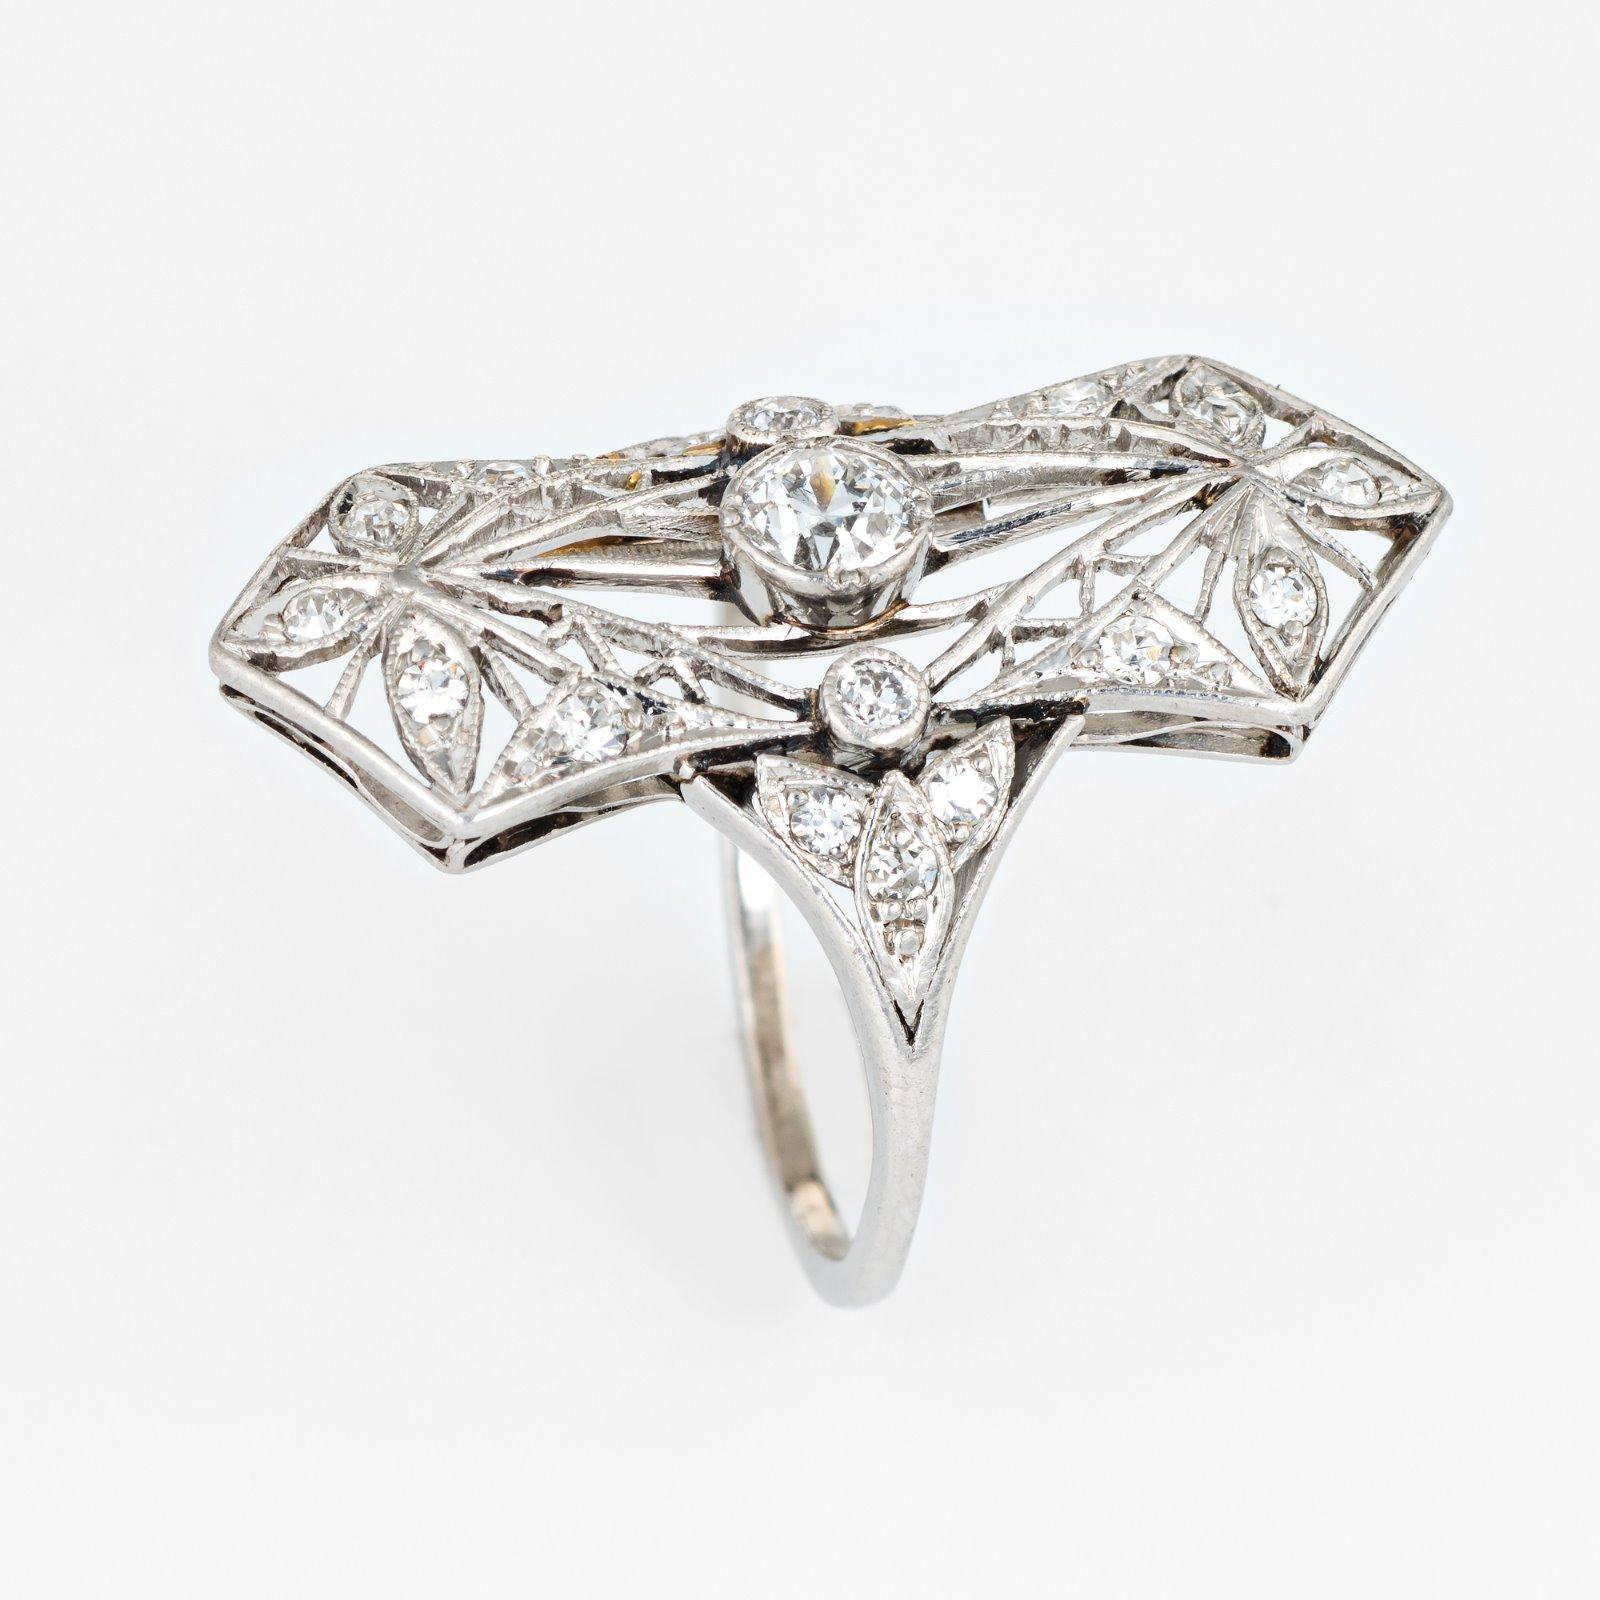 Bague édouardienne ancienne (circa 1900s à 1910s) finement détaillée, réalisée en platine 900. 

Le diamant taille ancienne mine, estimé à 0,25 carat, monté au centre, est accentué par 18 diamants estimés à 0,02 ou 0,03 carat. Le poids total des